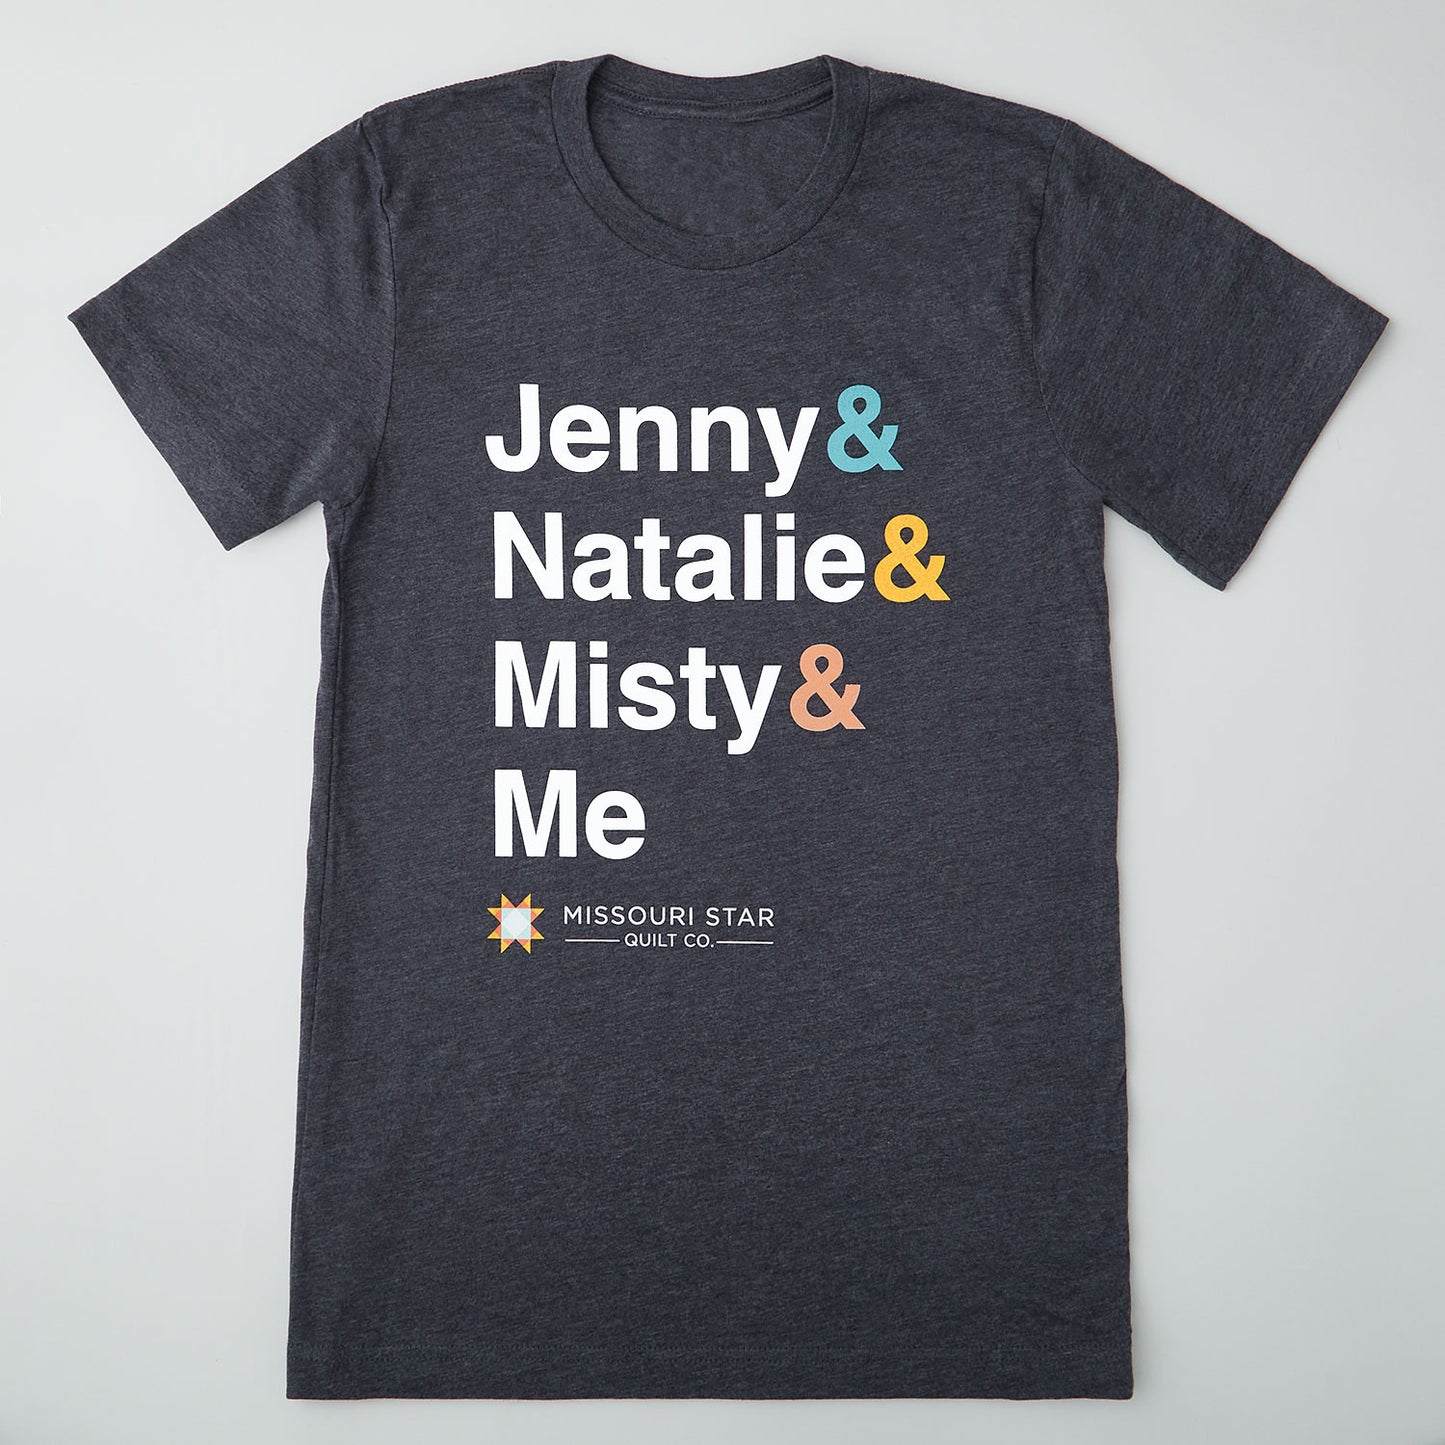 Jenny & Natalie & Misty & Me T-shirt - 2XL Primary Image